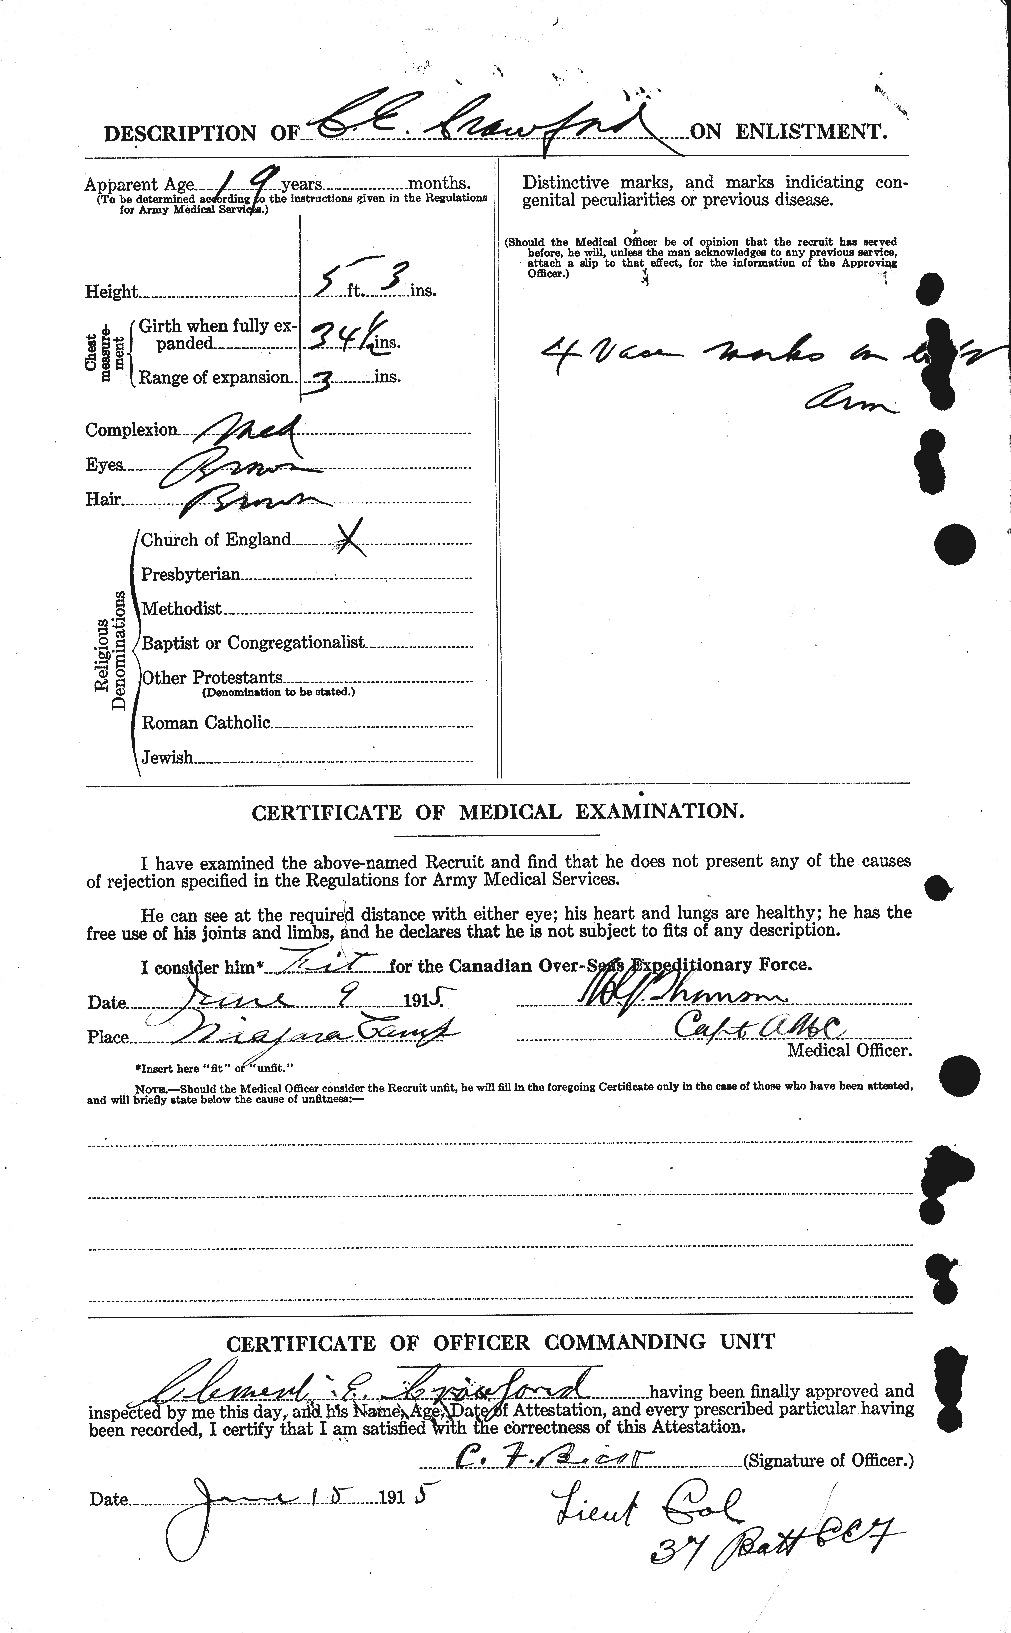 Dossiers du Personnel de la Première Guerre mondiale - CEC 060829b